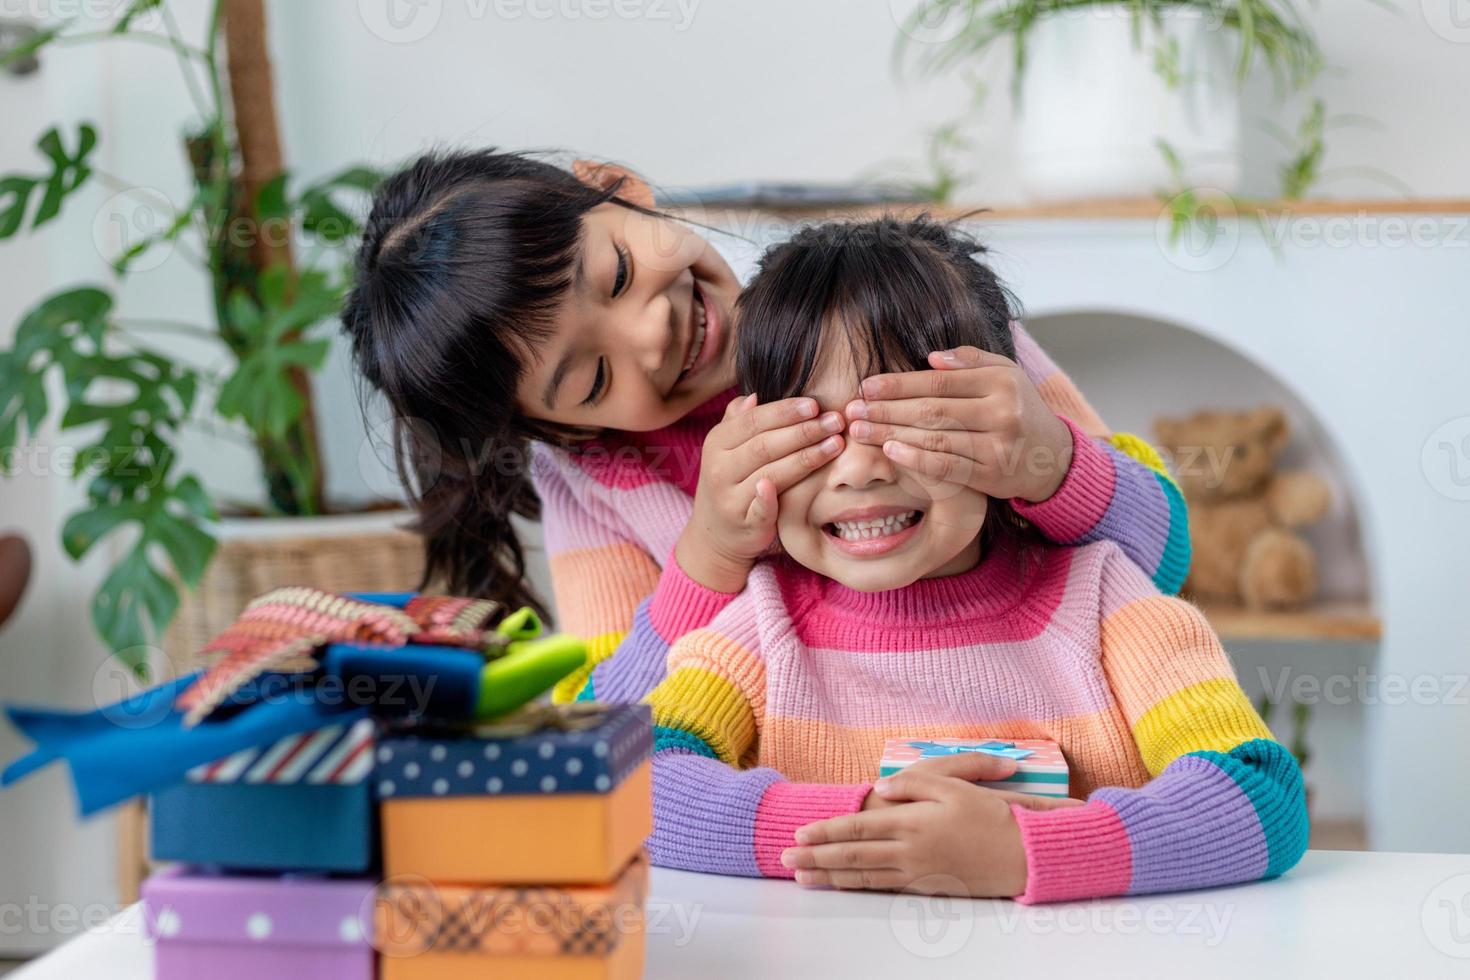 petite fille faisant un cadeau à une petite fille heureuse tenant une boîte-cadeau, fermant les yeux d'un joli sourire excité par la surprise d'anniversaire de sa sœur photo